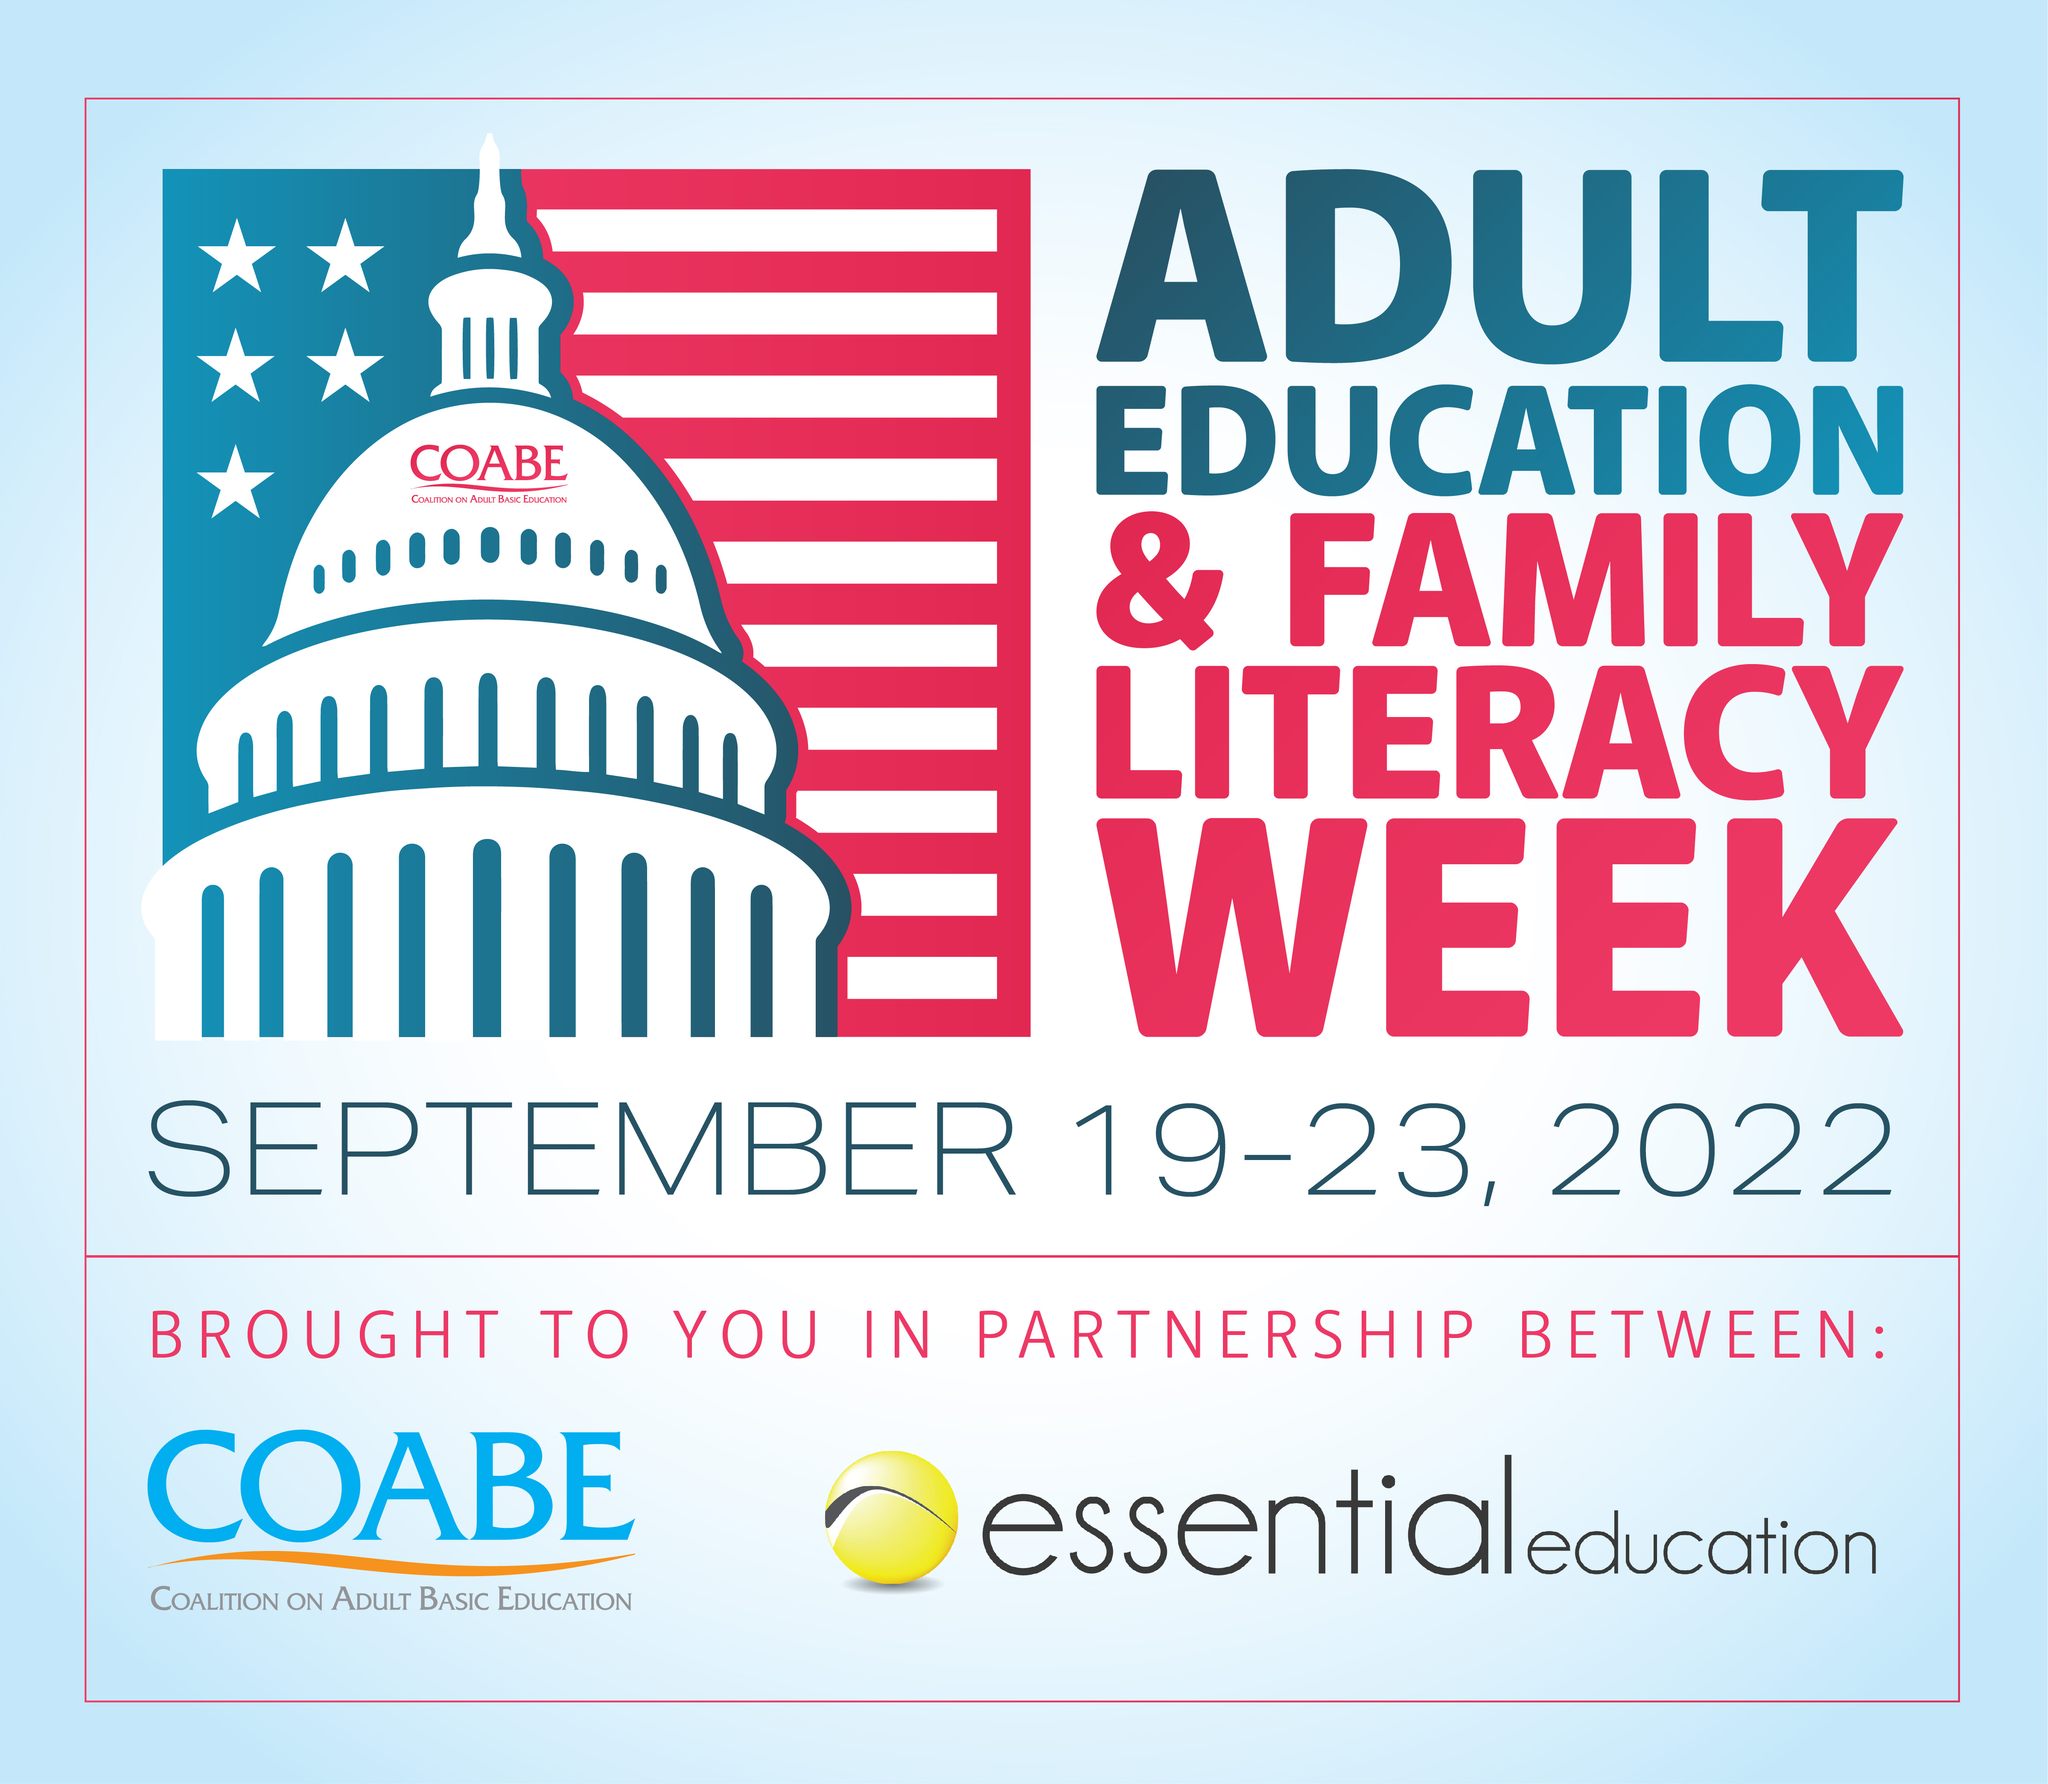 Adult education week